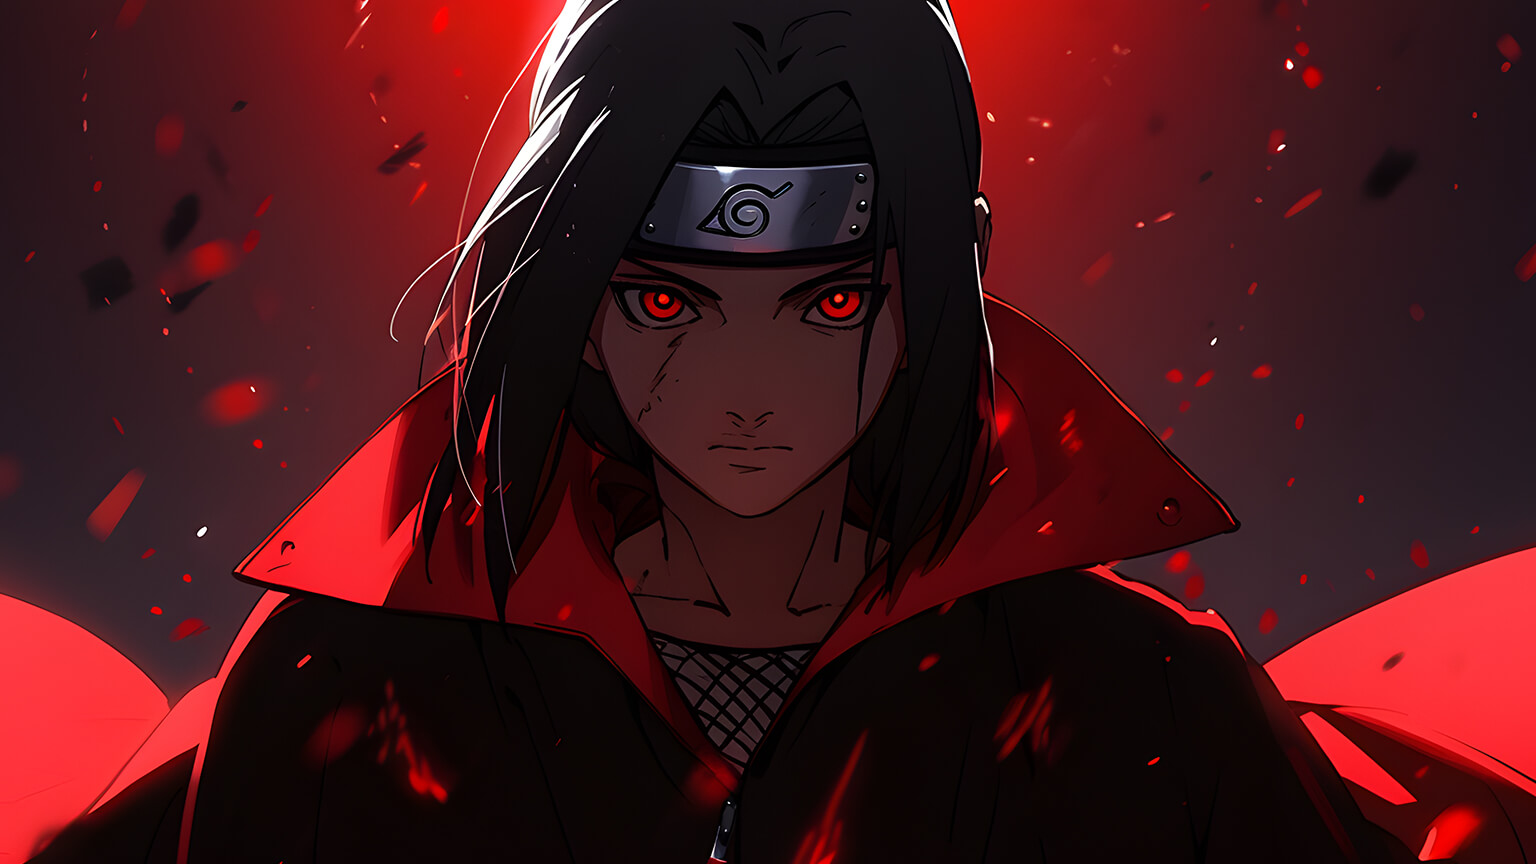 Naruto: The Inspiration For Itachi Uchiha's Doujutsu